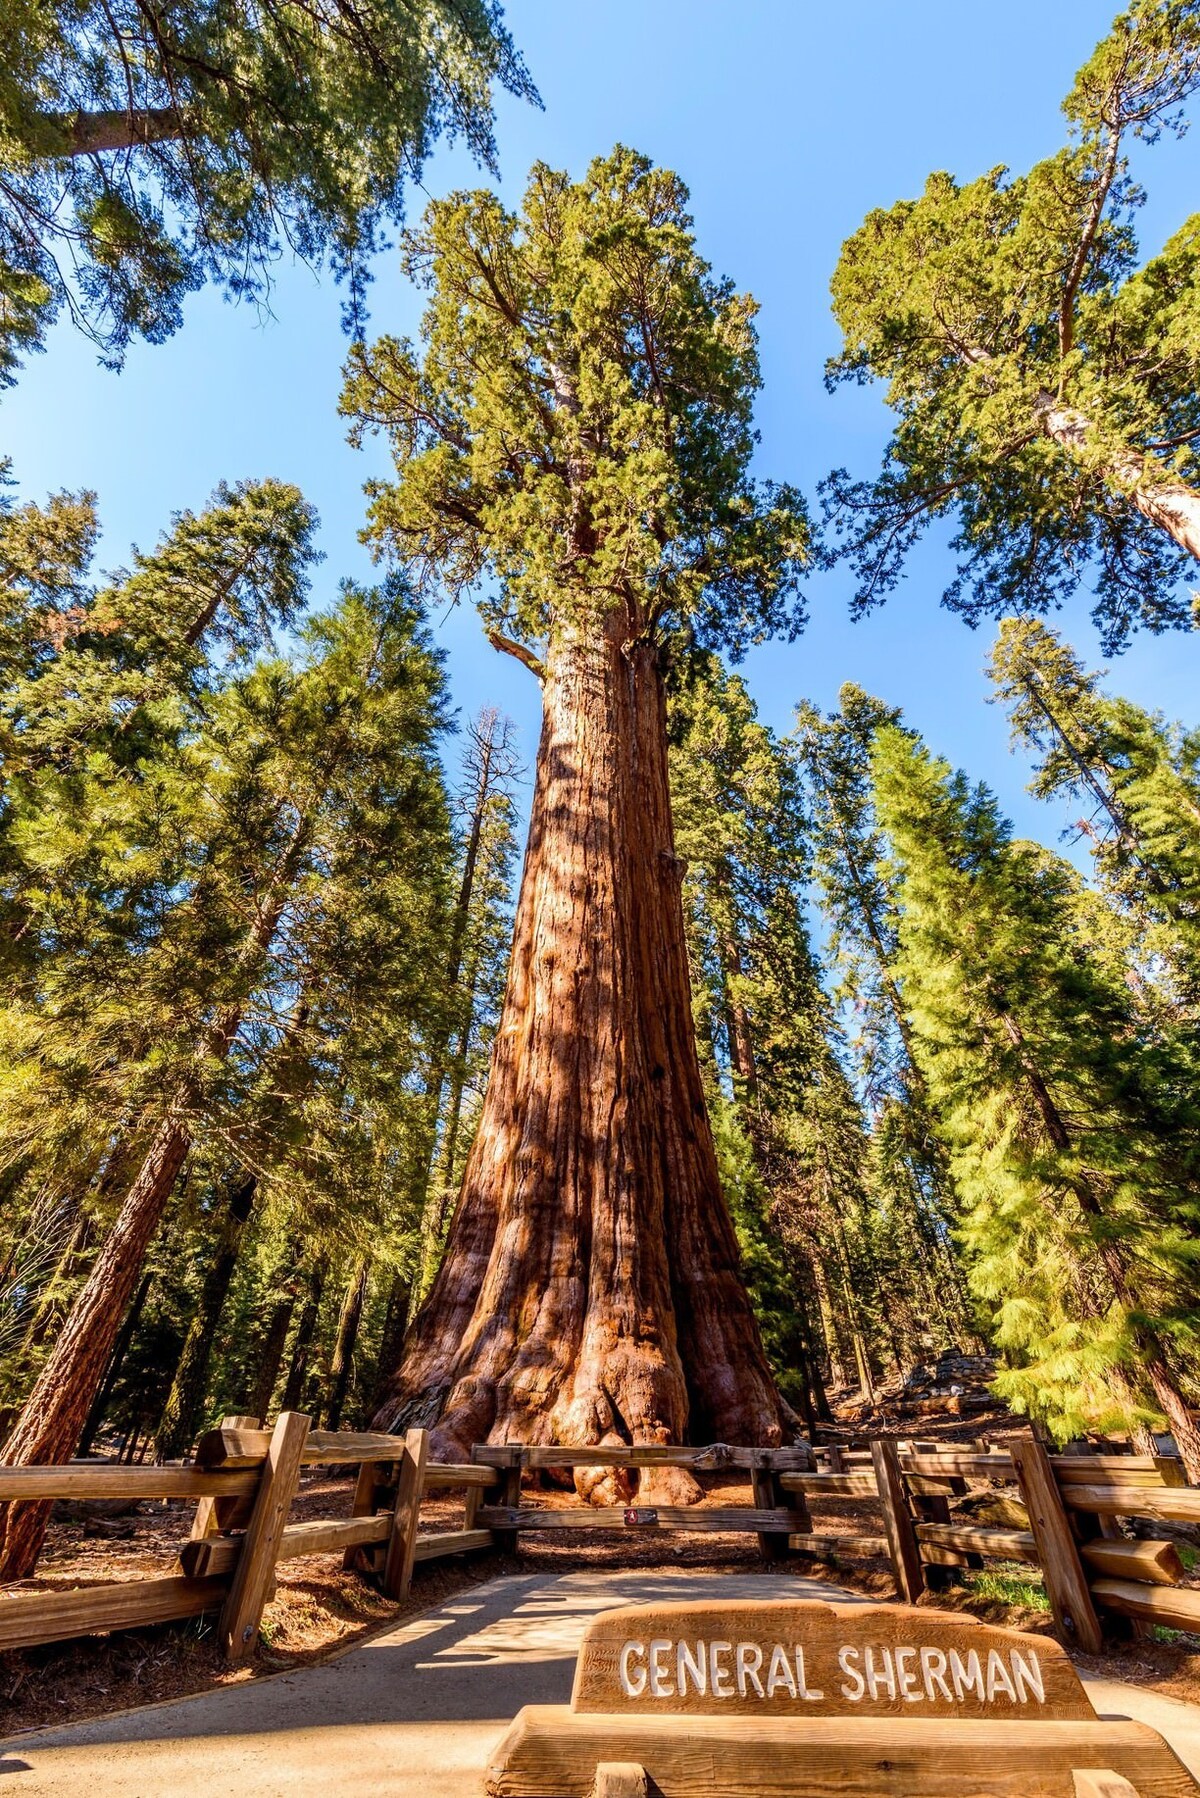 Cây General Sherman trong khu rừng cây khổng lồ ở Vườn quốc gia Sequoia, California, Mỹ có chiều cao 83 m và đường kính hơn 10 m. Đây chưa phải là cây tùng sequoia cao lớn nhất nhưng lại rộng nhất thế giới. Cây đã sống hơn 2.200 năm và vẫn không ngừng phát triển qua từng năm. Ảnh: Trover.